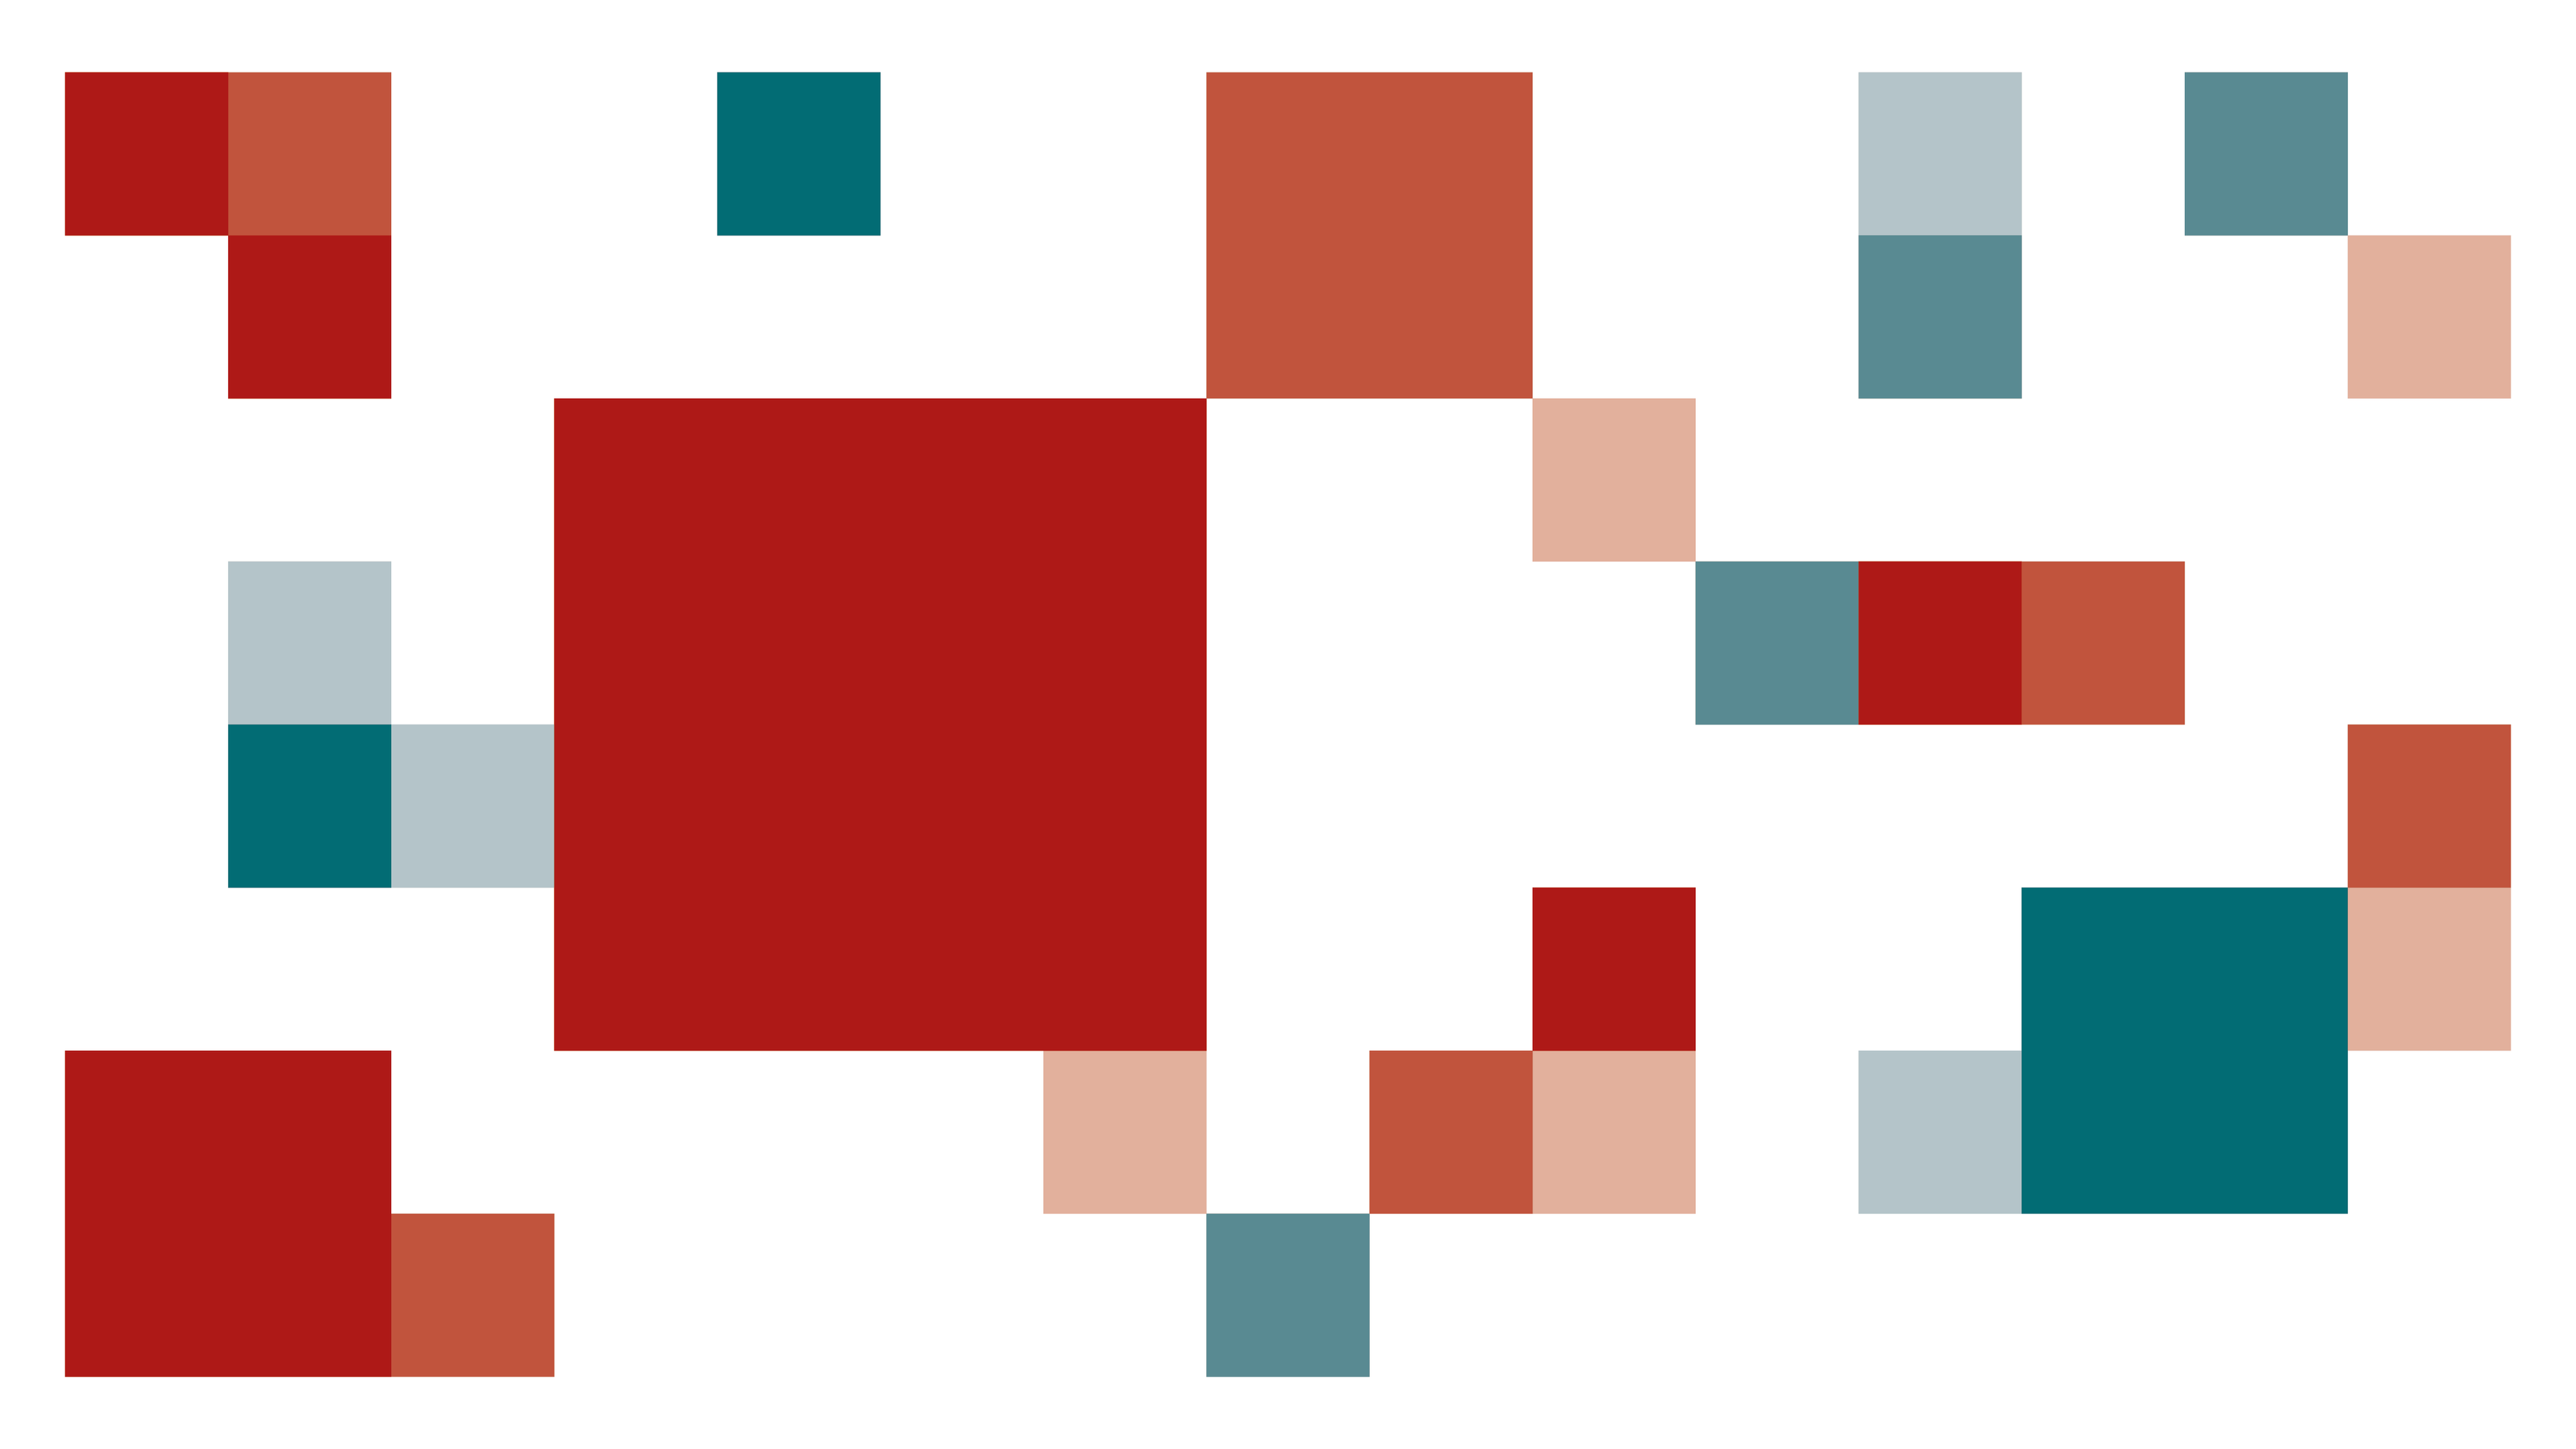 Graphique de boîte rouge et turquoise inspiré du thème CRS.